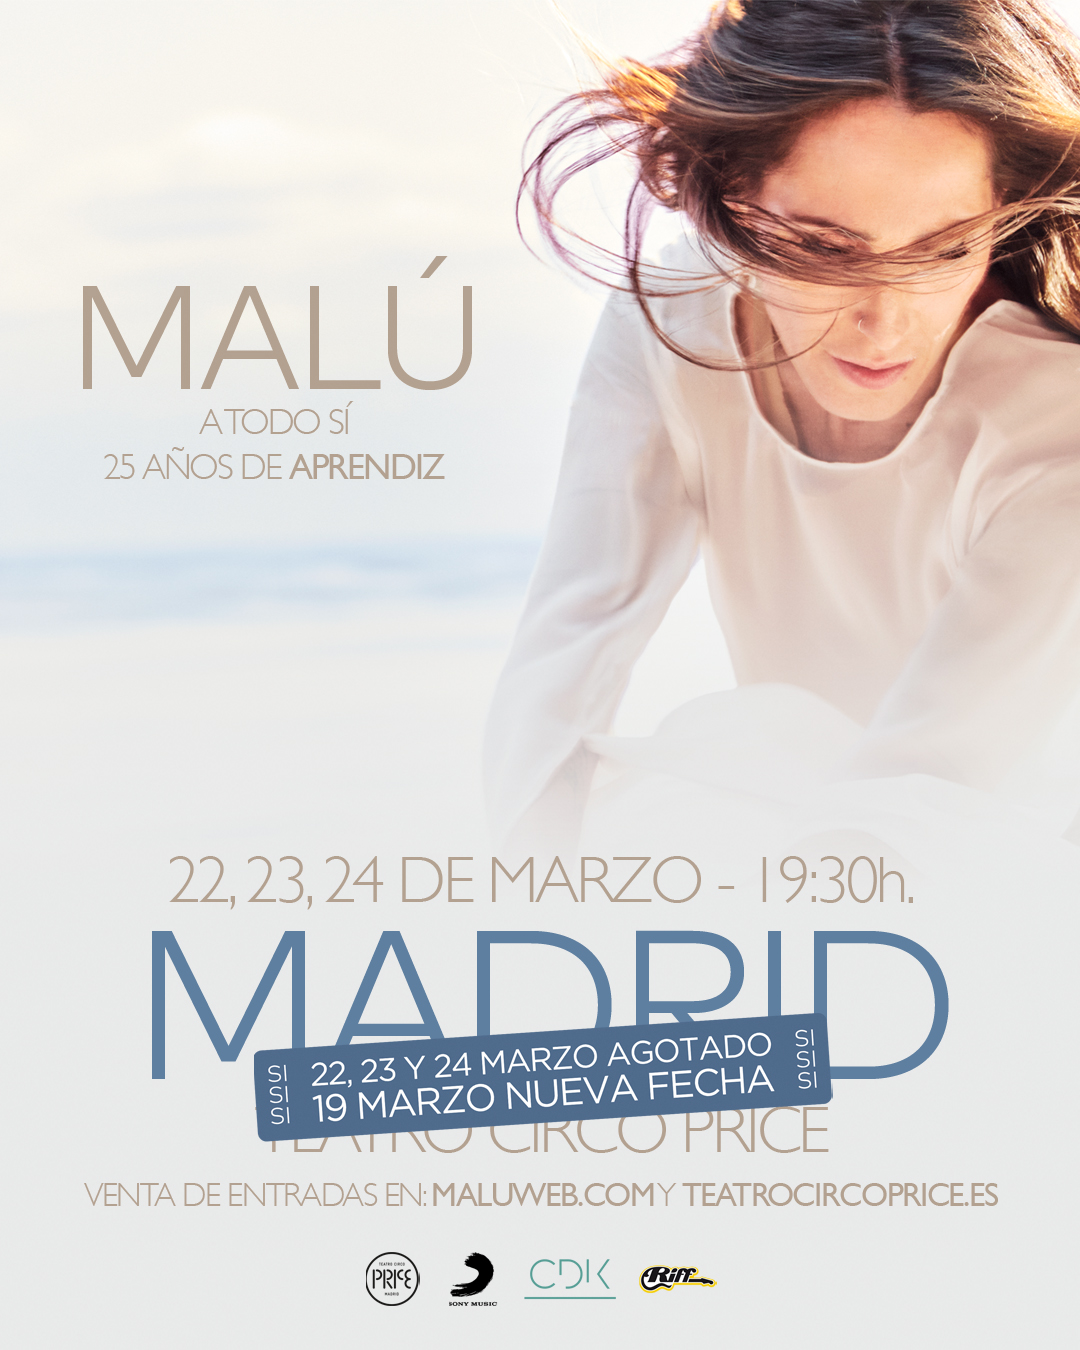 Malú - Madrid cuarta fecha - A todo si - 25 años de aprendiz